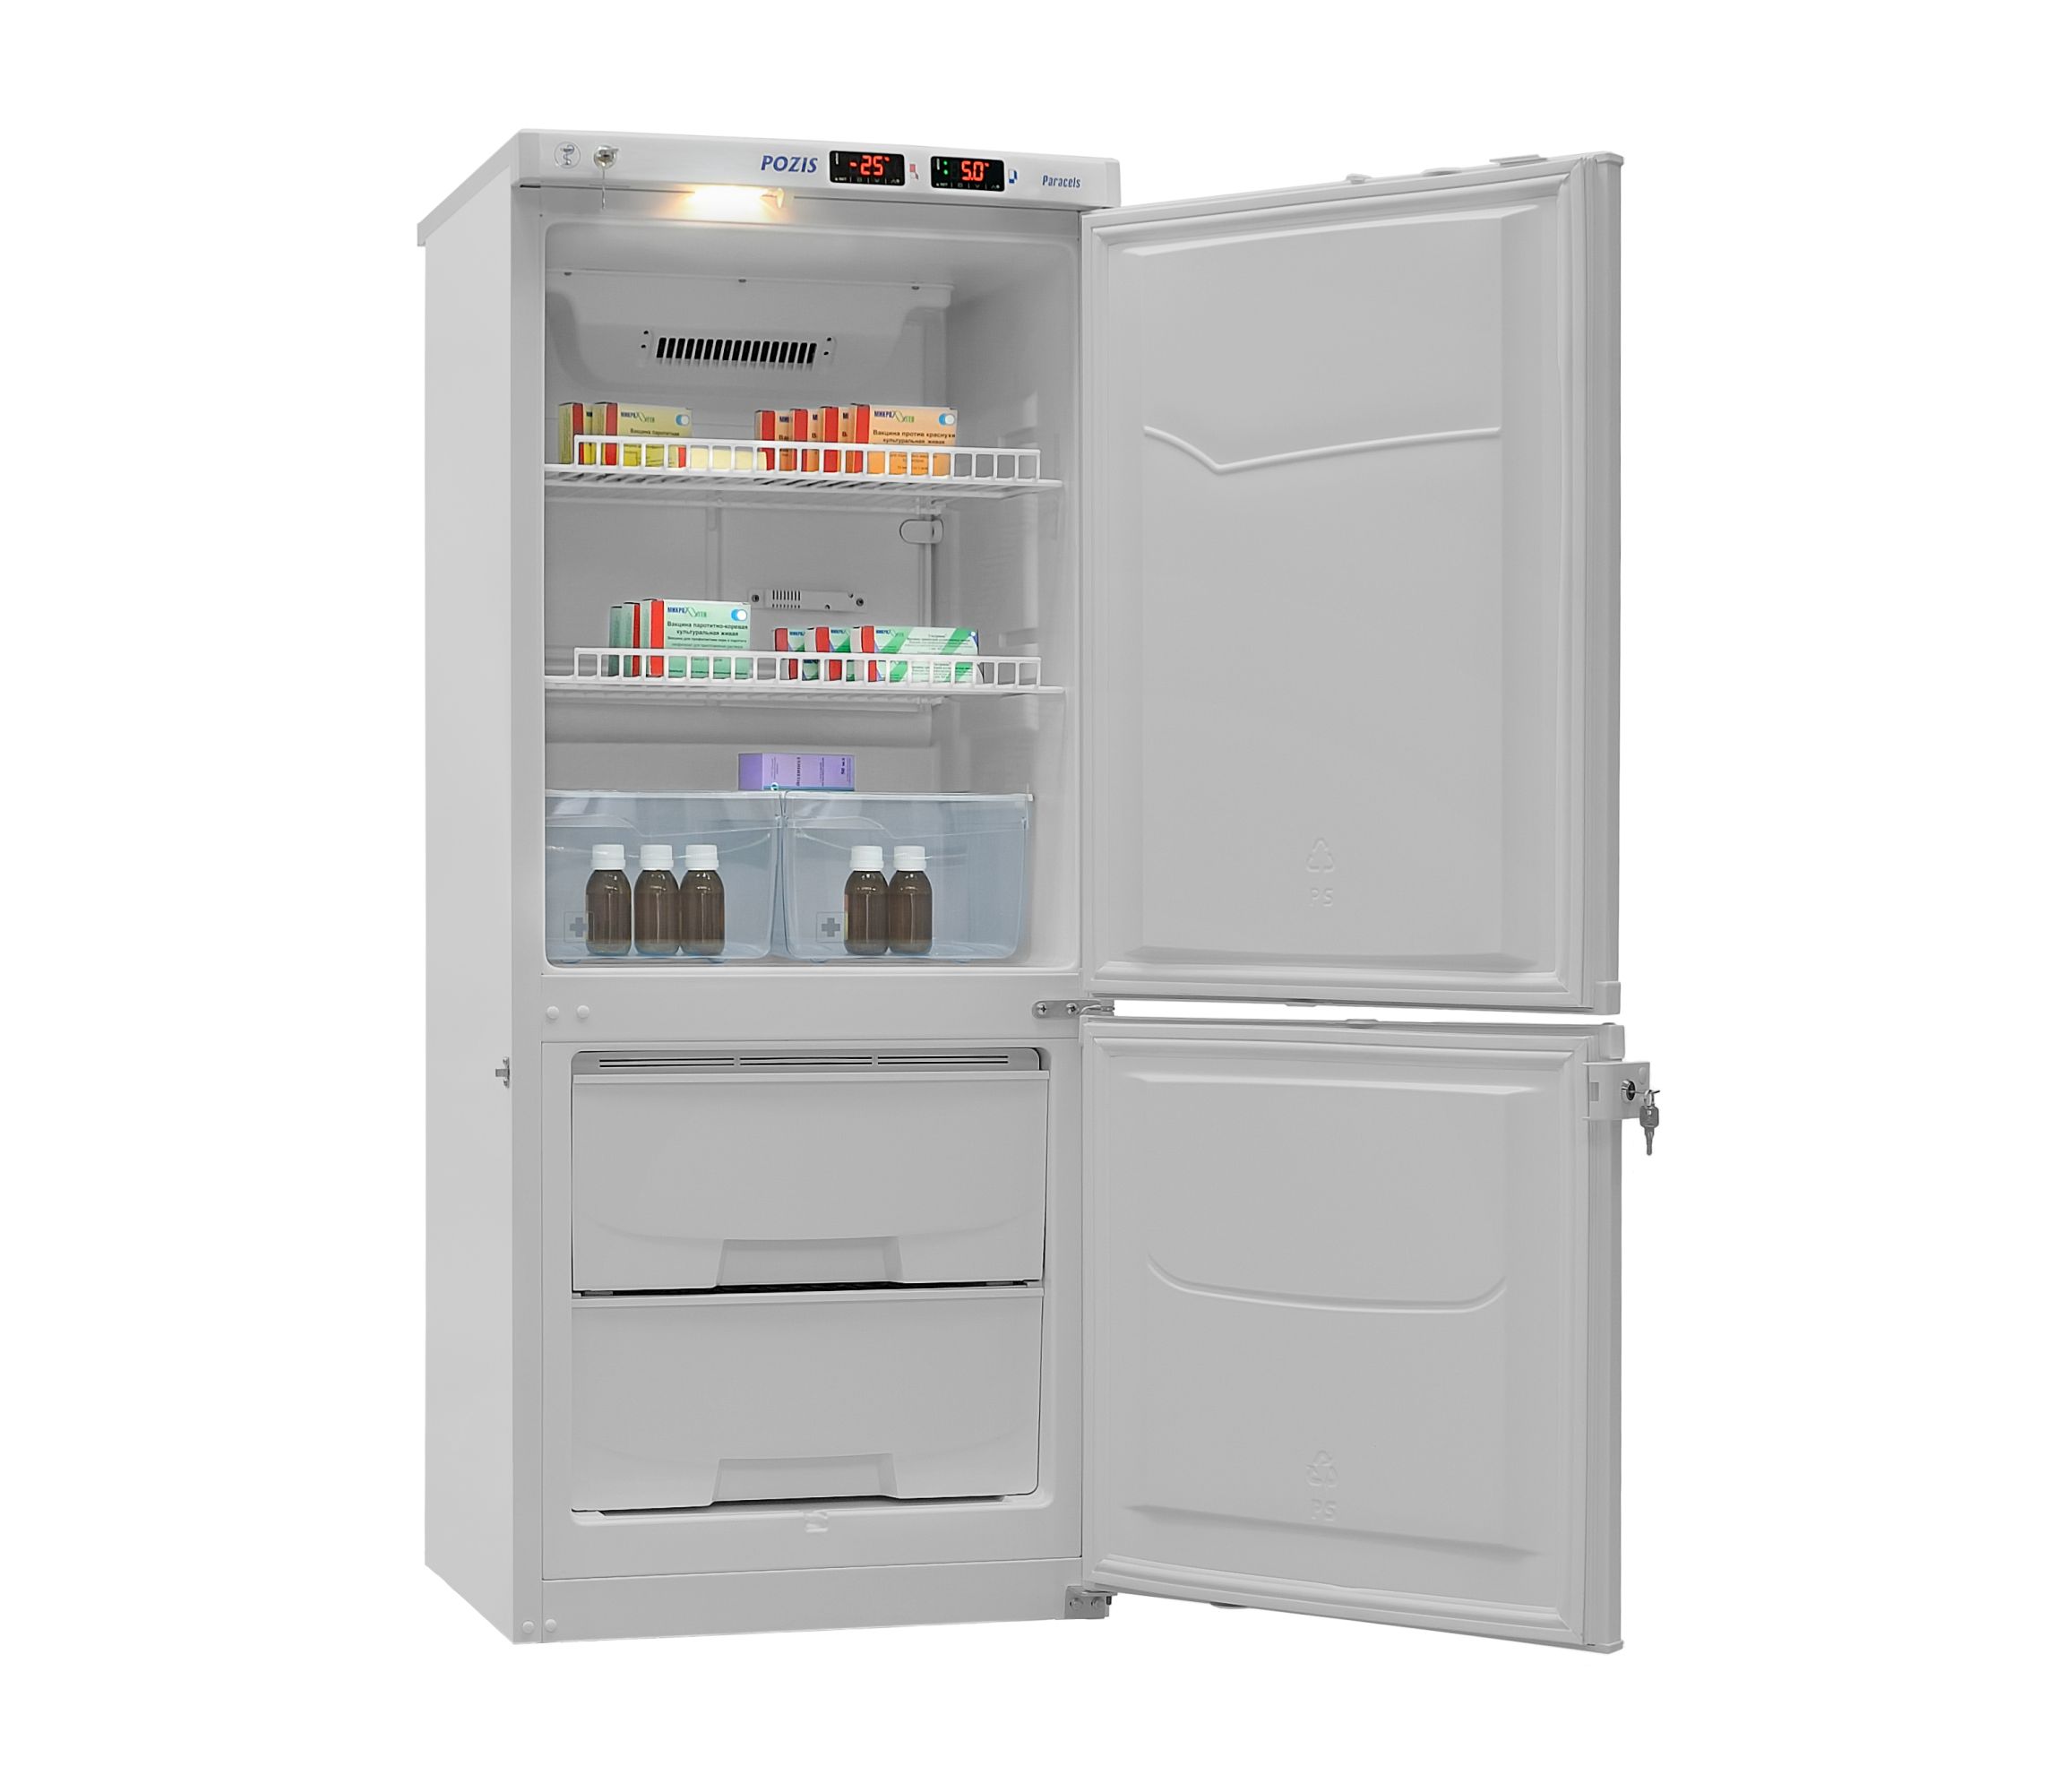 Pozis 170. Холодильник Pozis ХЛ-250. Холодильник комбинированный лабораторный ХЛ-250 Позис. Pozis холодильник фармацевтический Pozis ХФД-280. Холодильник хф-250-2 Позис.